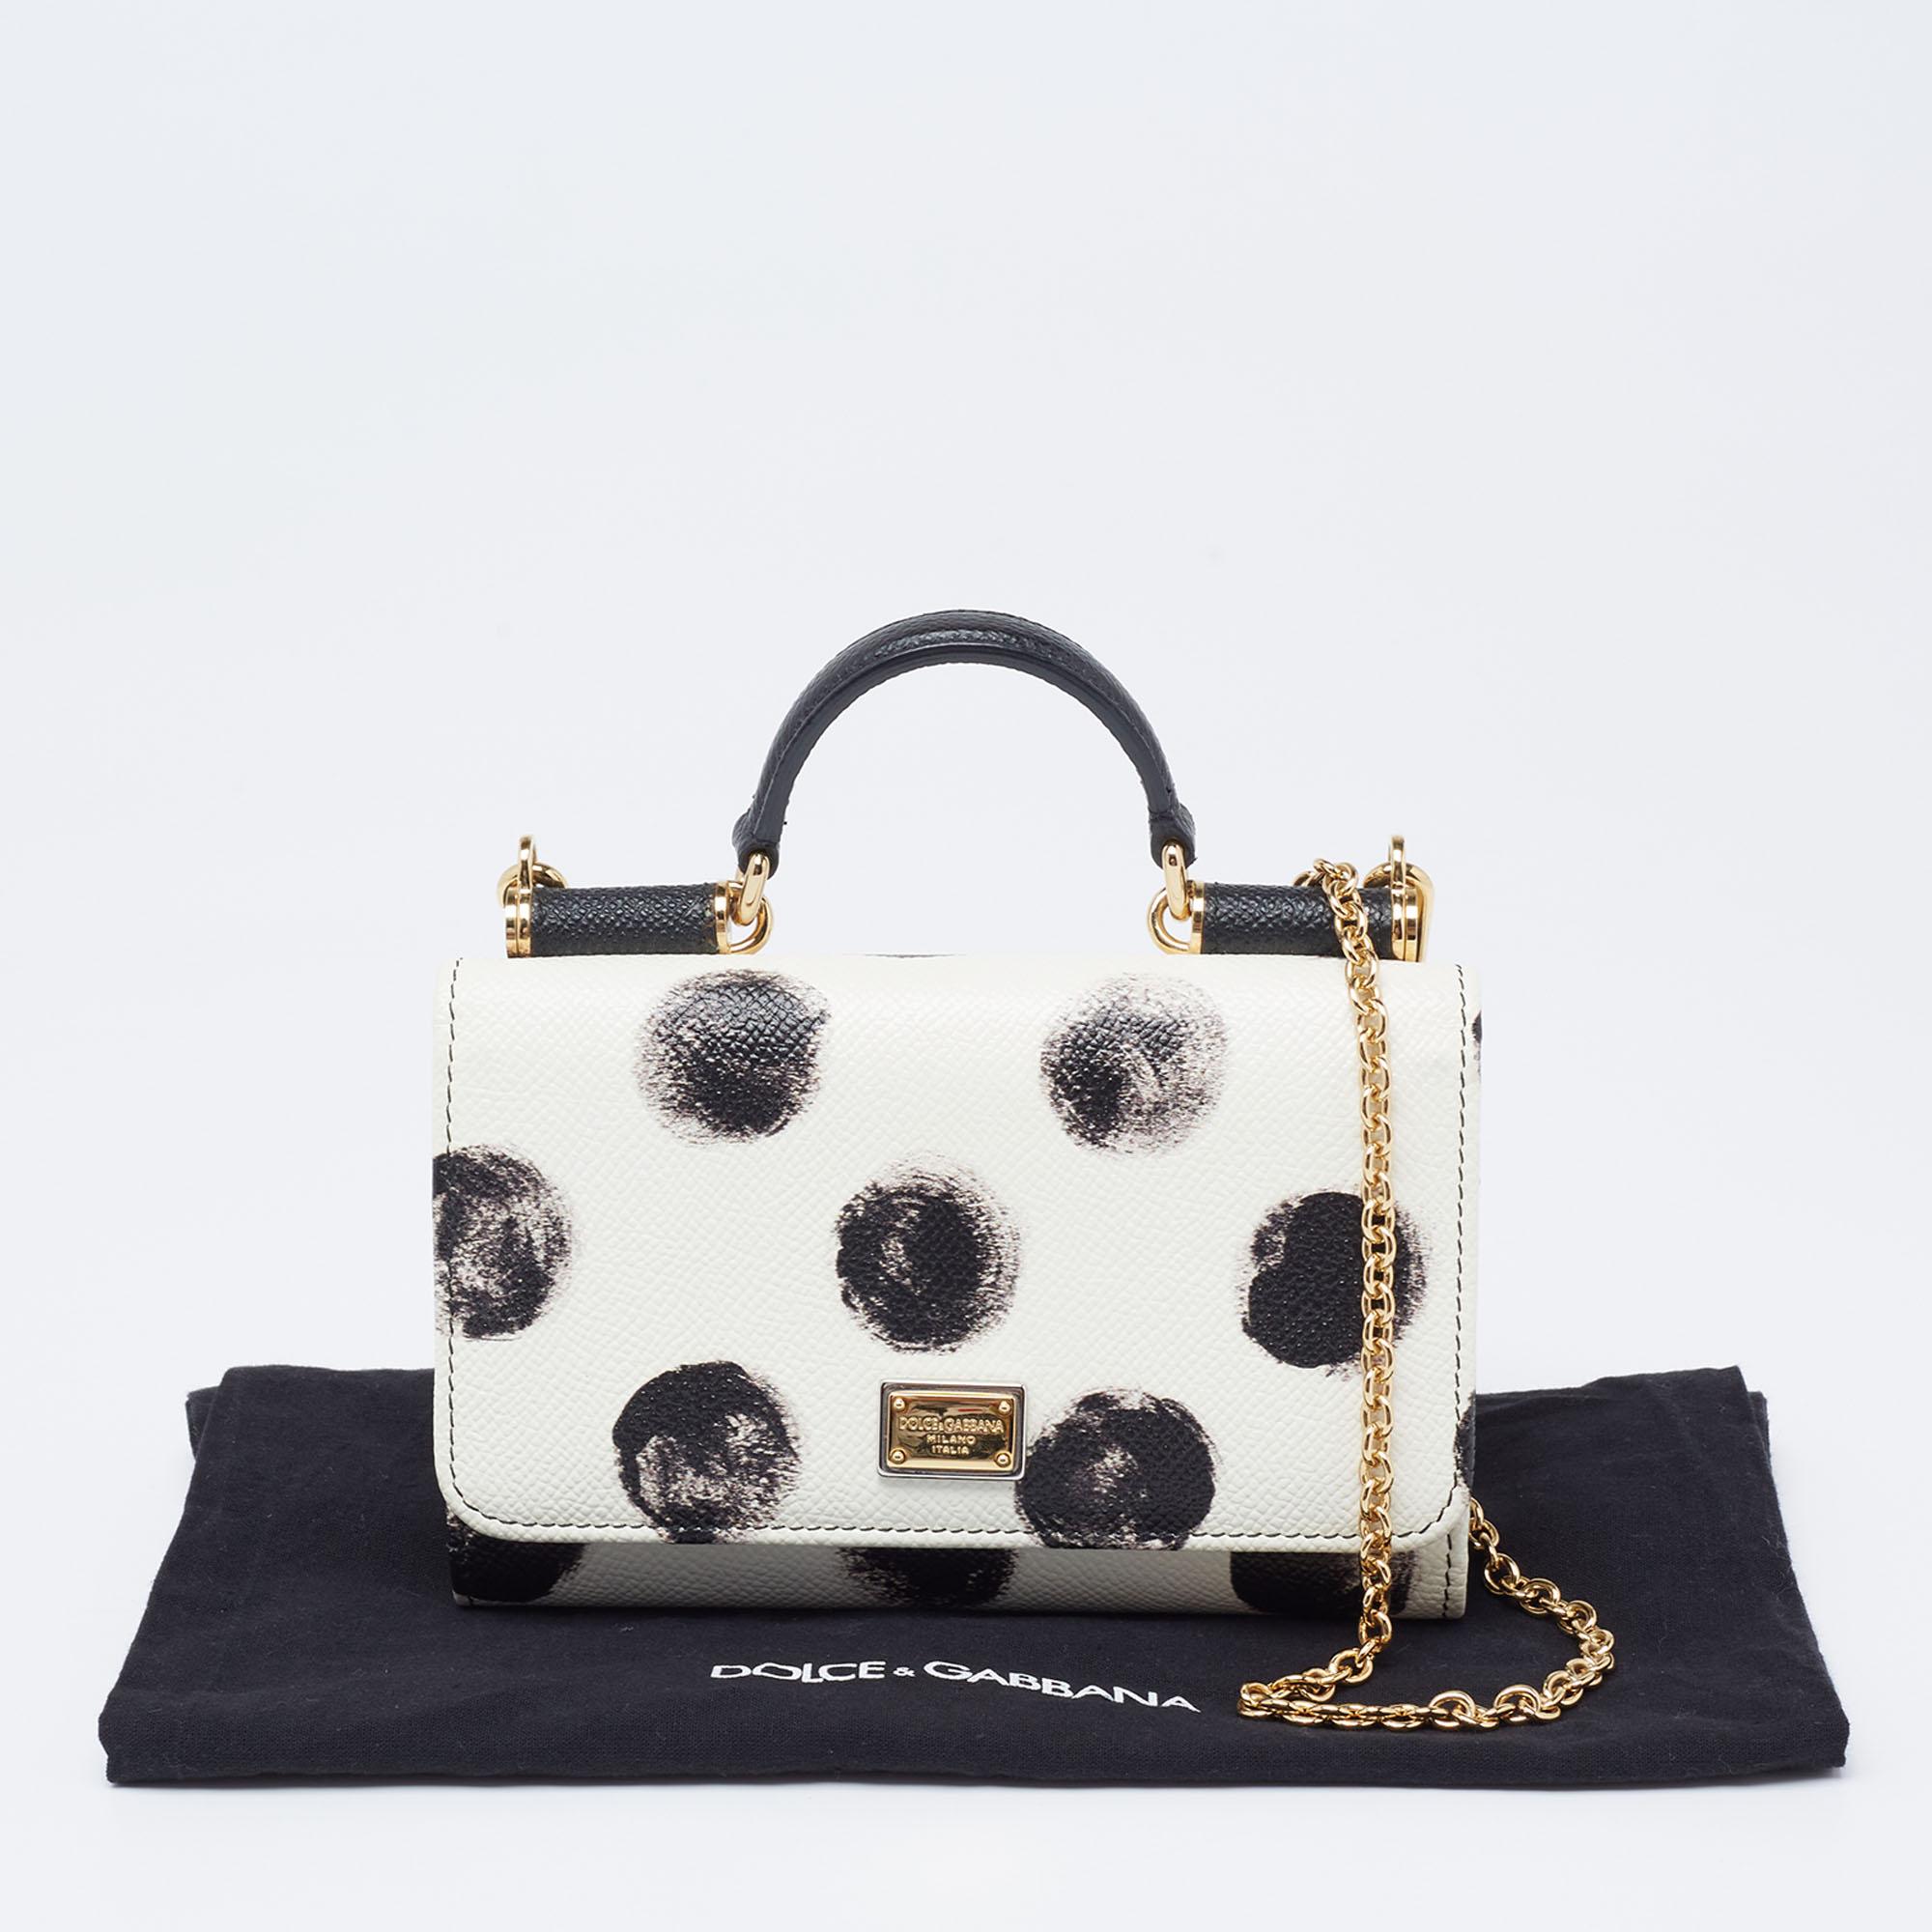 Dolce & Gabbana White/Black Polka Dot Leather Miss Sicily Von Wallet on Chain 7